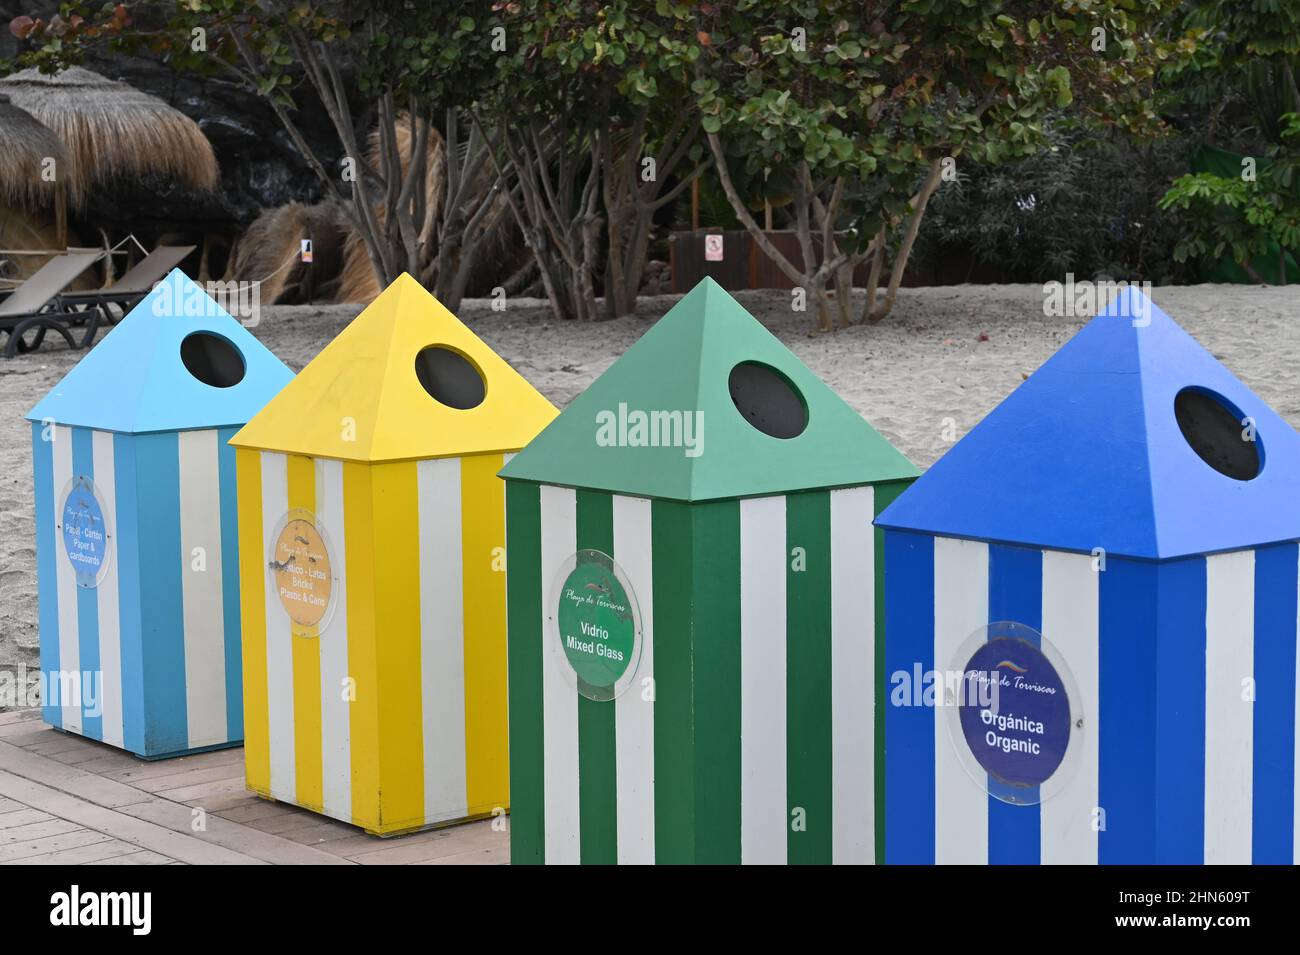 Una serie di bidoni di riciclaggio su una spiaggia a Costa Adeje, Tenerife, che assomigliano a tende nelle tonalità del blu, giallo e verde Foto Stock